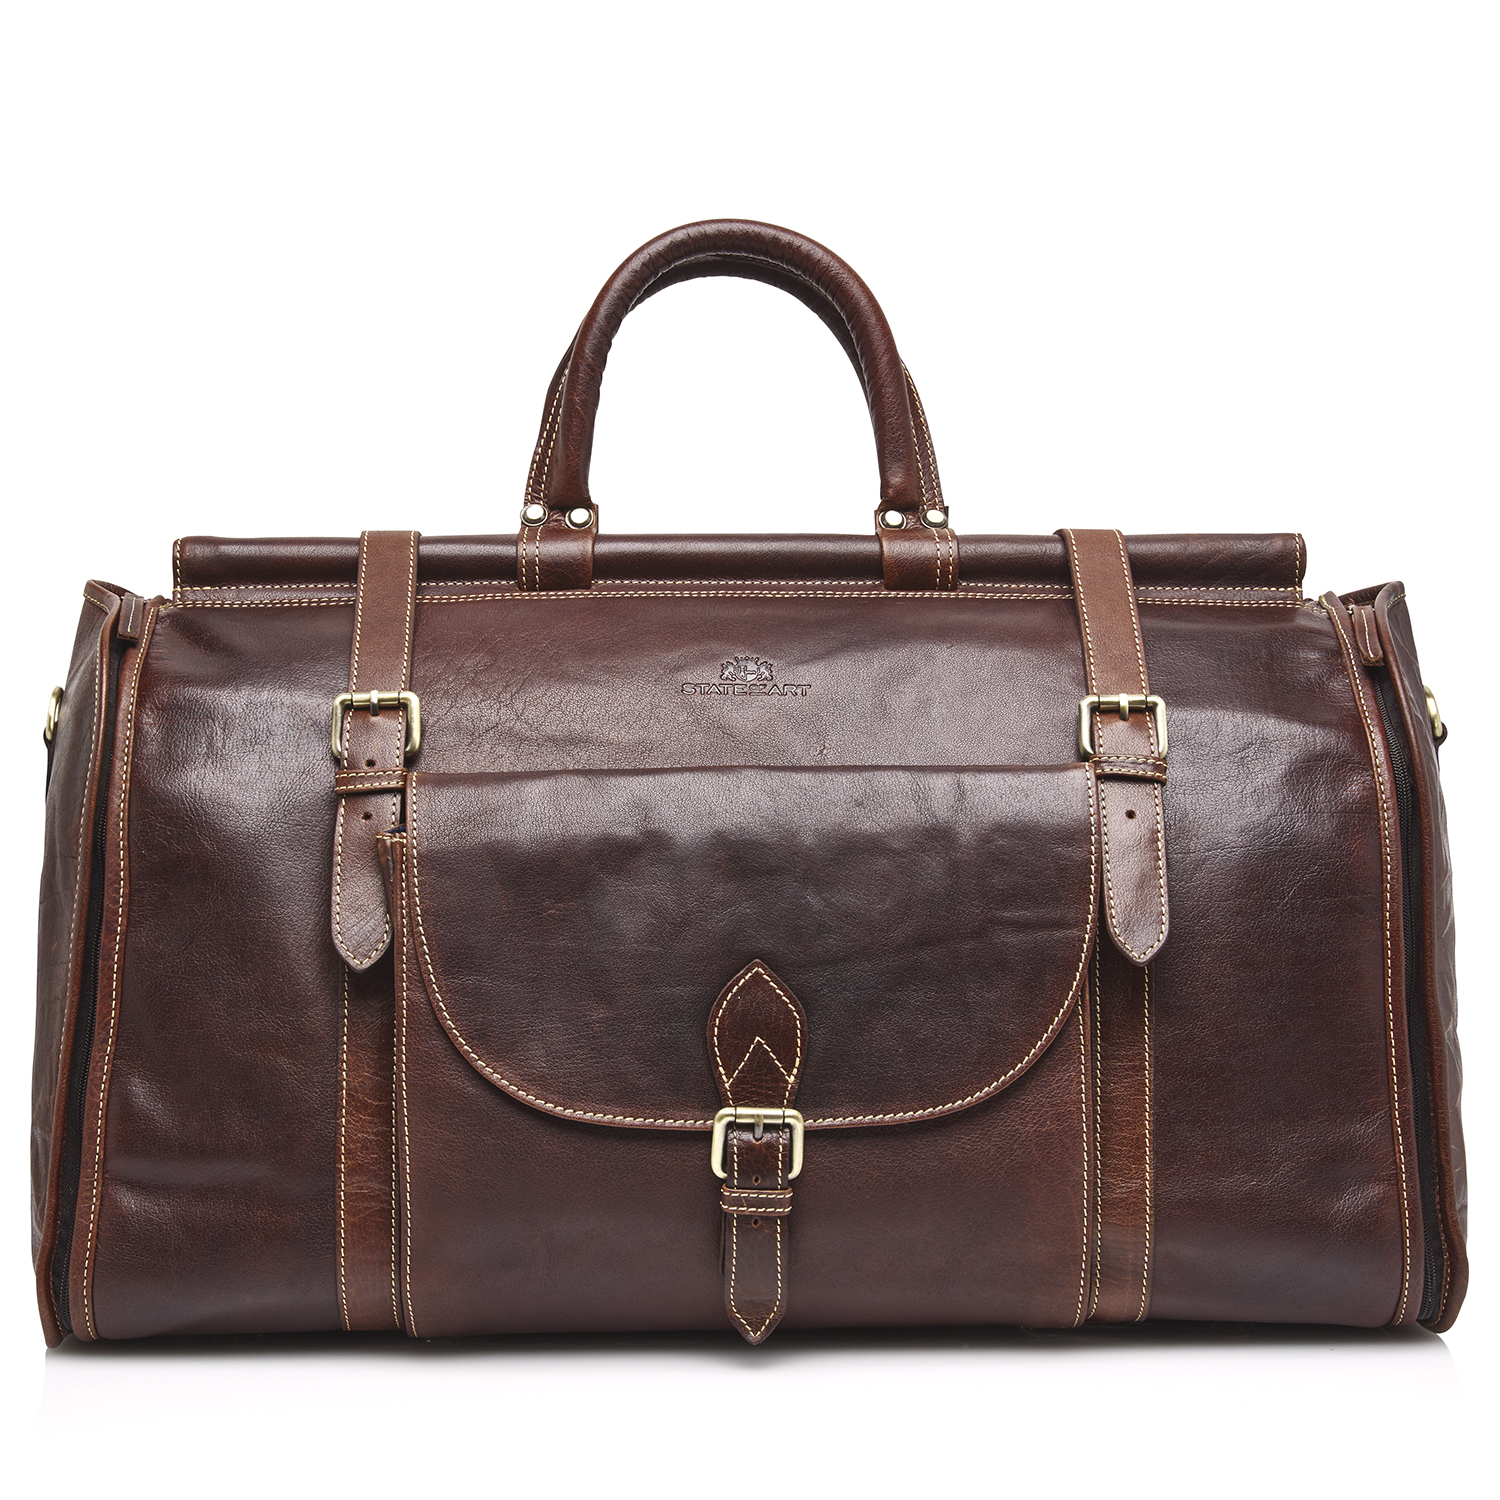 Weekend Bag of Leather - dark-brown plain